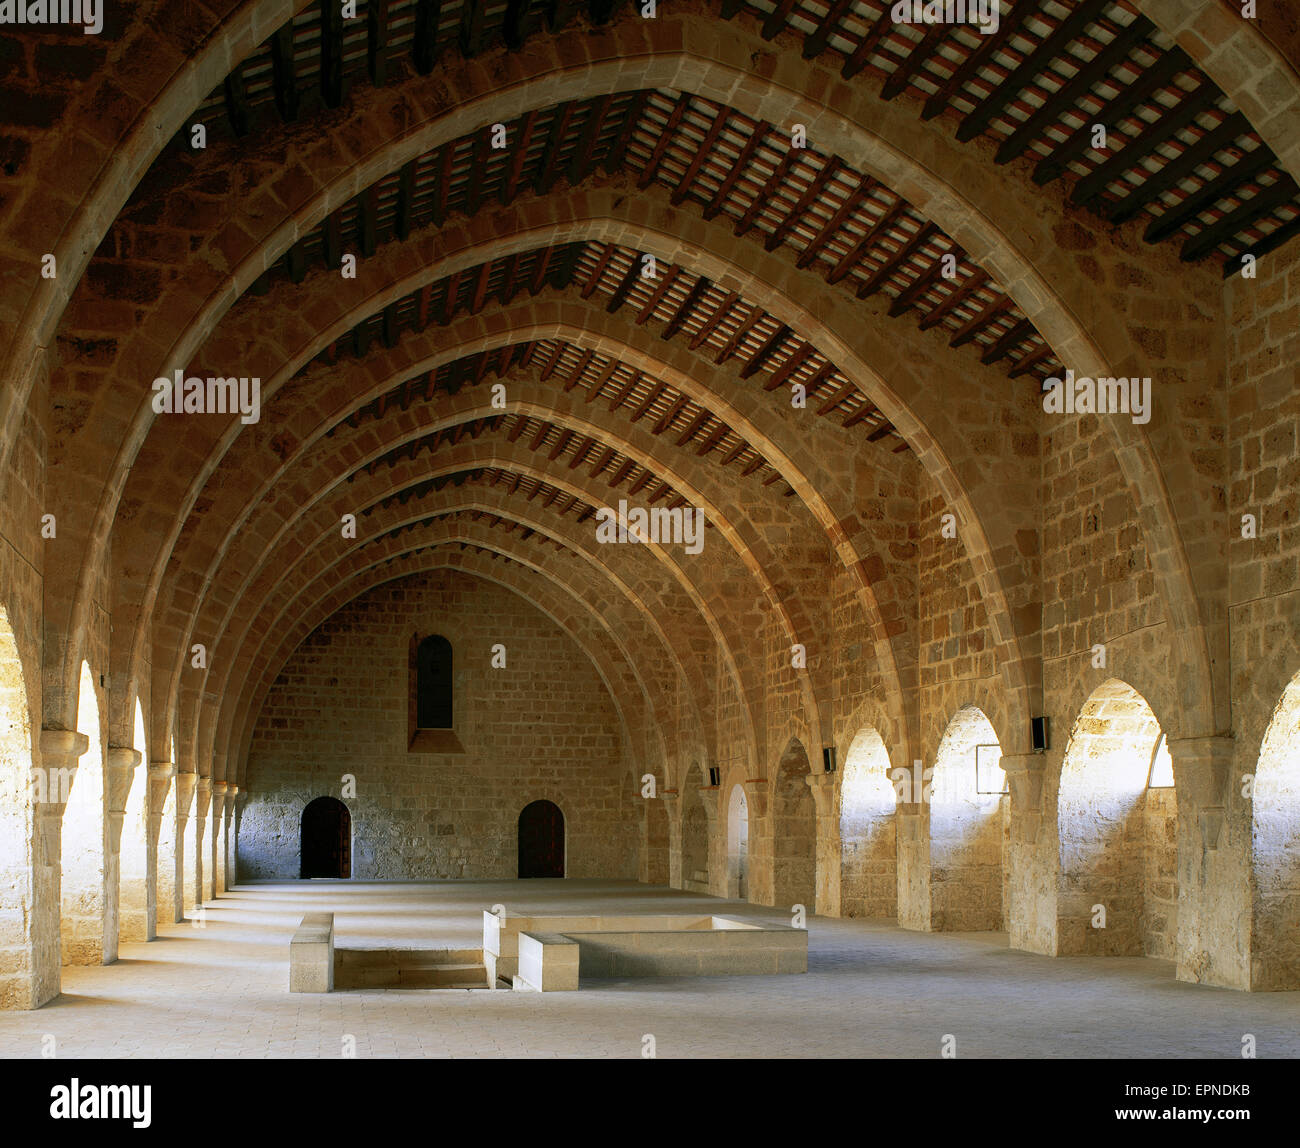 Monastère de Santa Maria de Santes Creus. Cistercienne. Dortoir, 1191. Arches ogivales. Catalogne. Espagne.e Banque D'Images